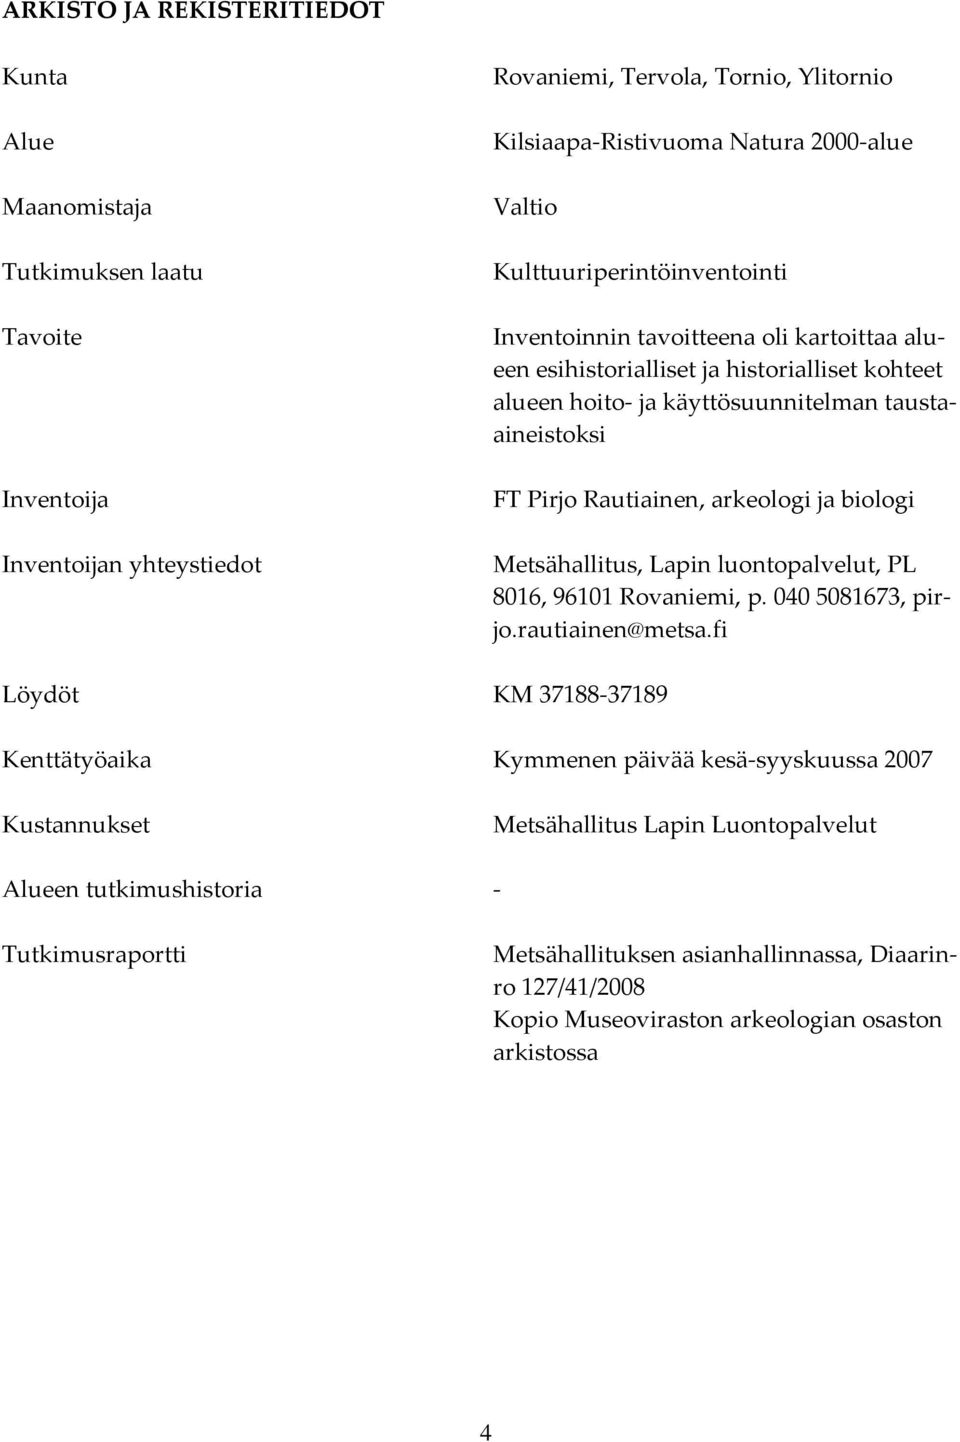 arkeologi ja biologi Metsähallitus, Lapin luontopalvelut, PL 8016, 96101 Rovaniemi, p. 040 5081673, pirjo.rautiainen@metsa.